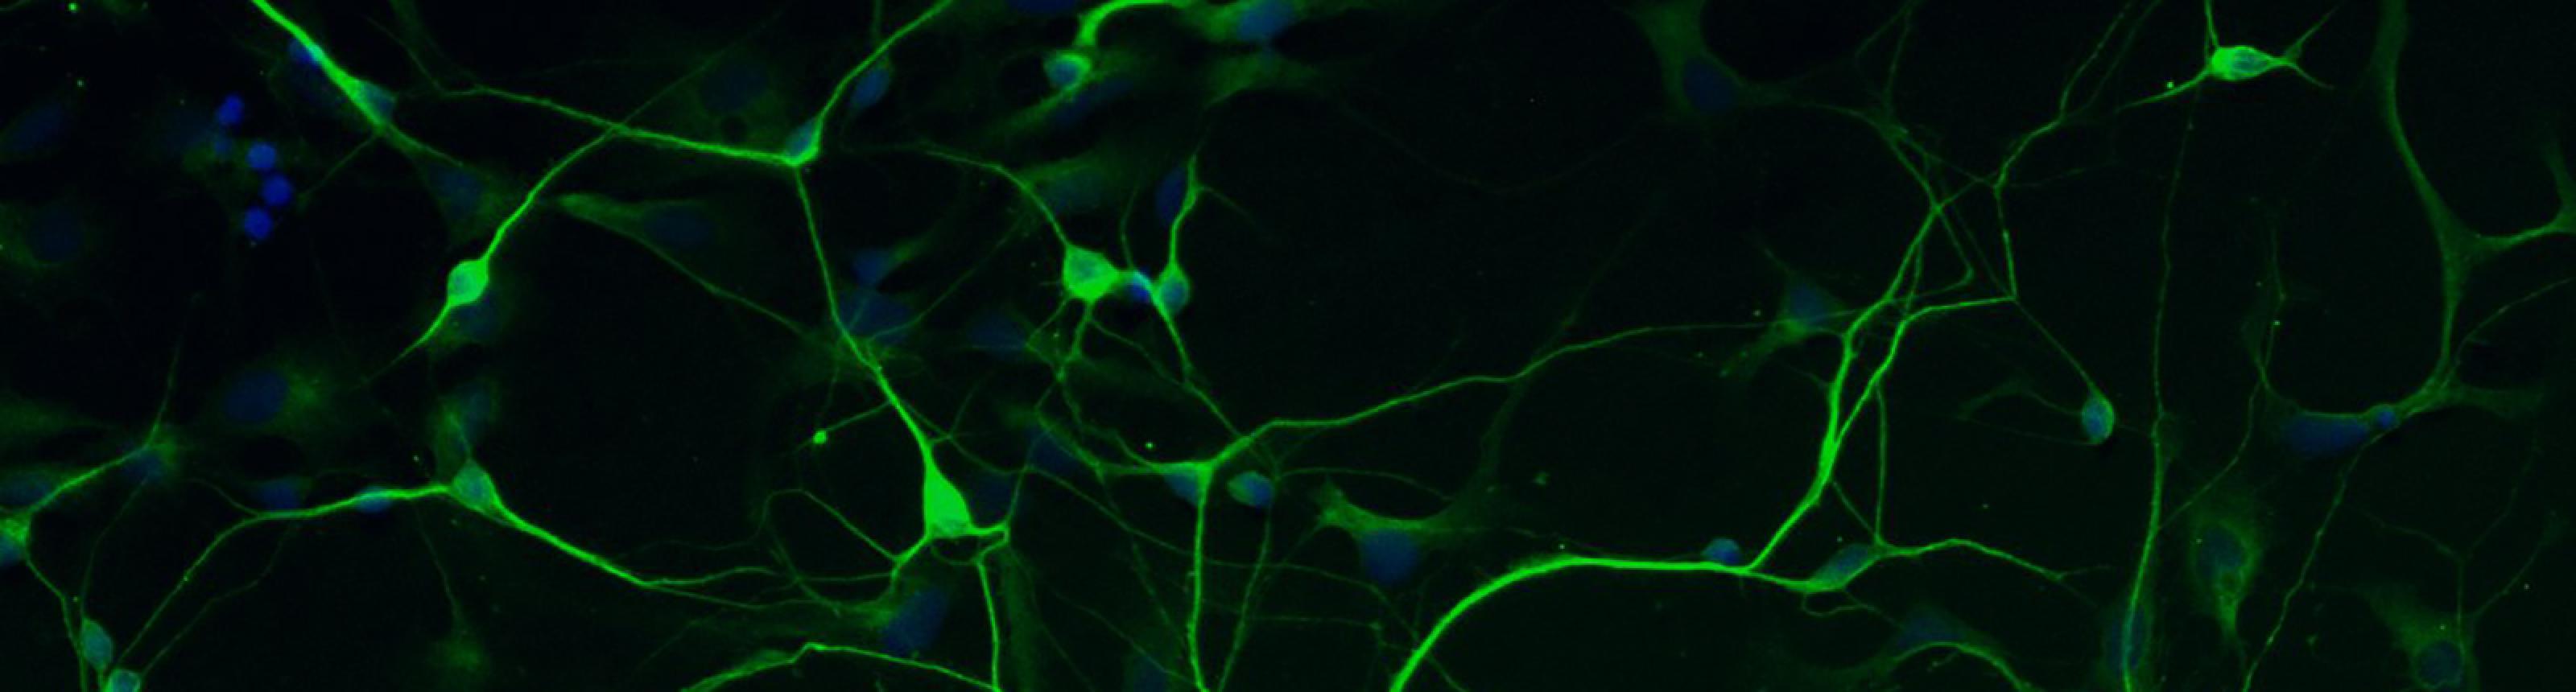 human stem cell derived neurons